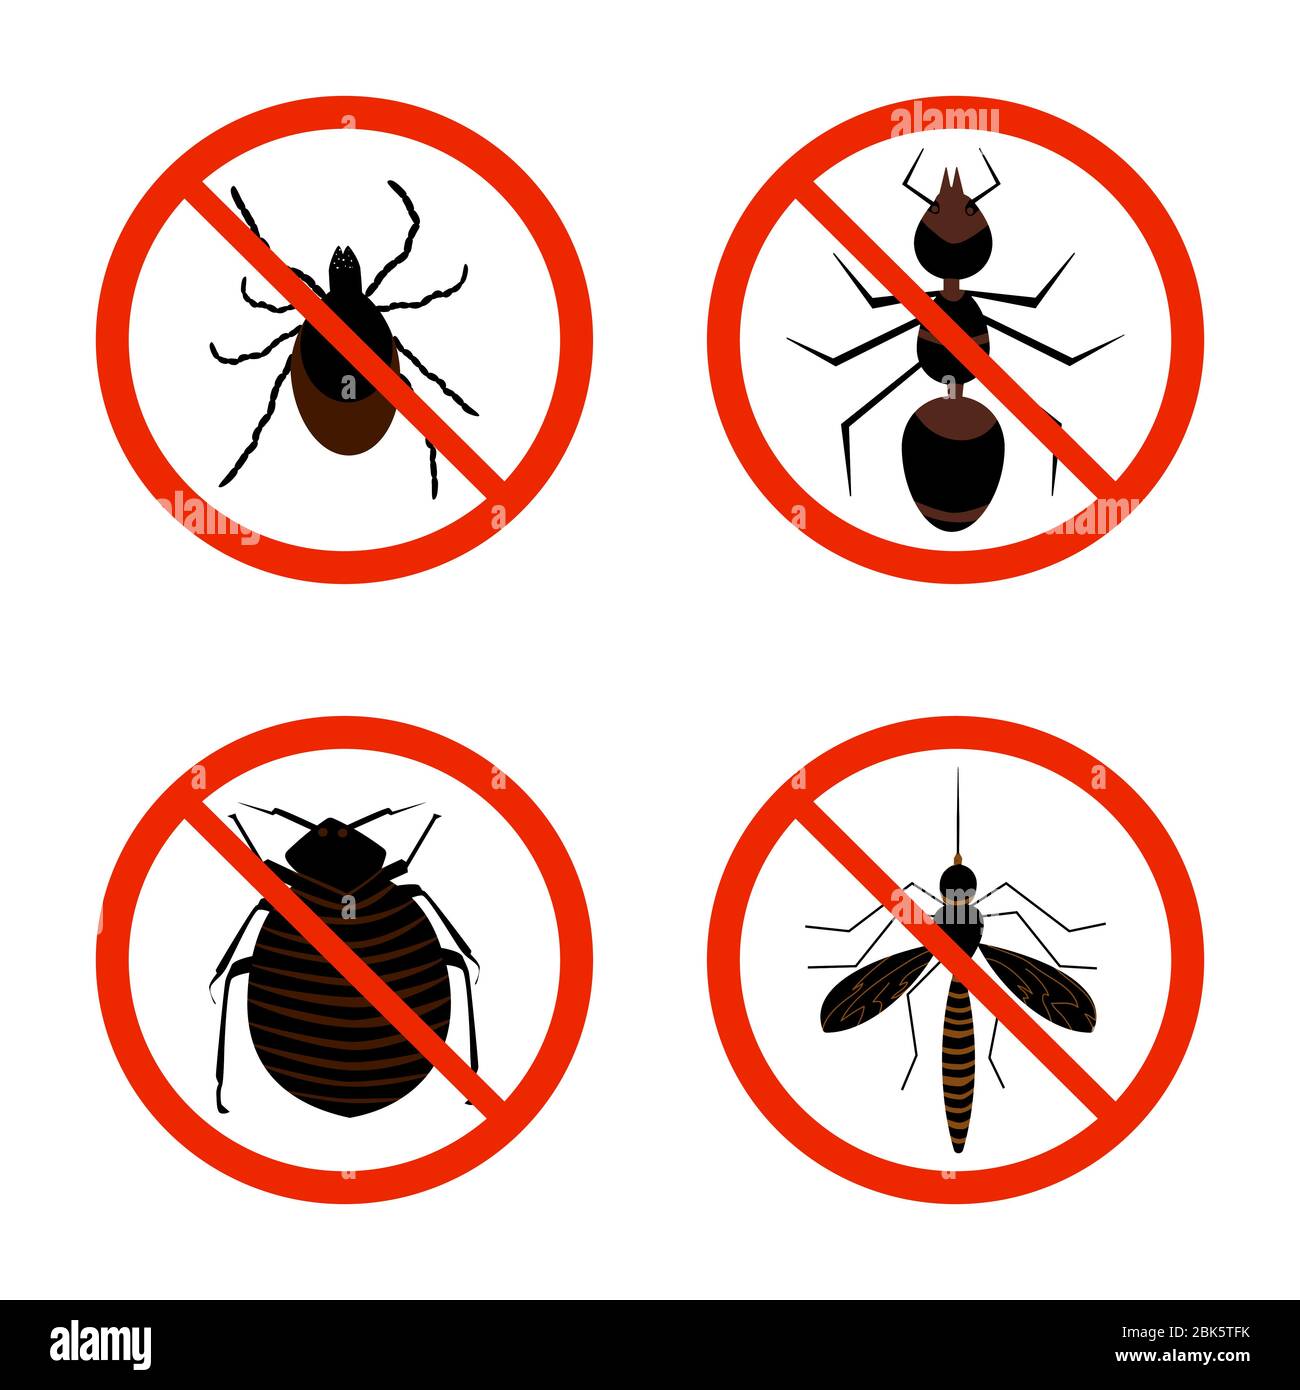 Icône de jeu d'insectes nuisibles. Collecte de signes d'avertissement rouges avec des parasites, des tiques, des fourmis, des puces et des moustiques. Emblème anti-insectes ou anti-parasites.Vector Illustration de Vecteur